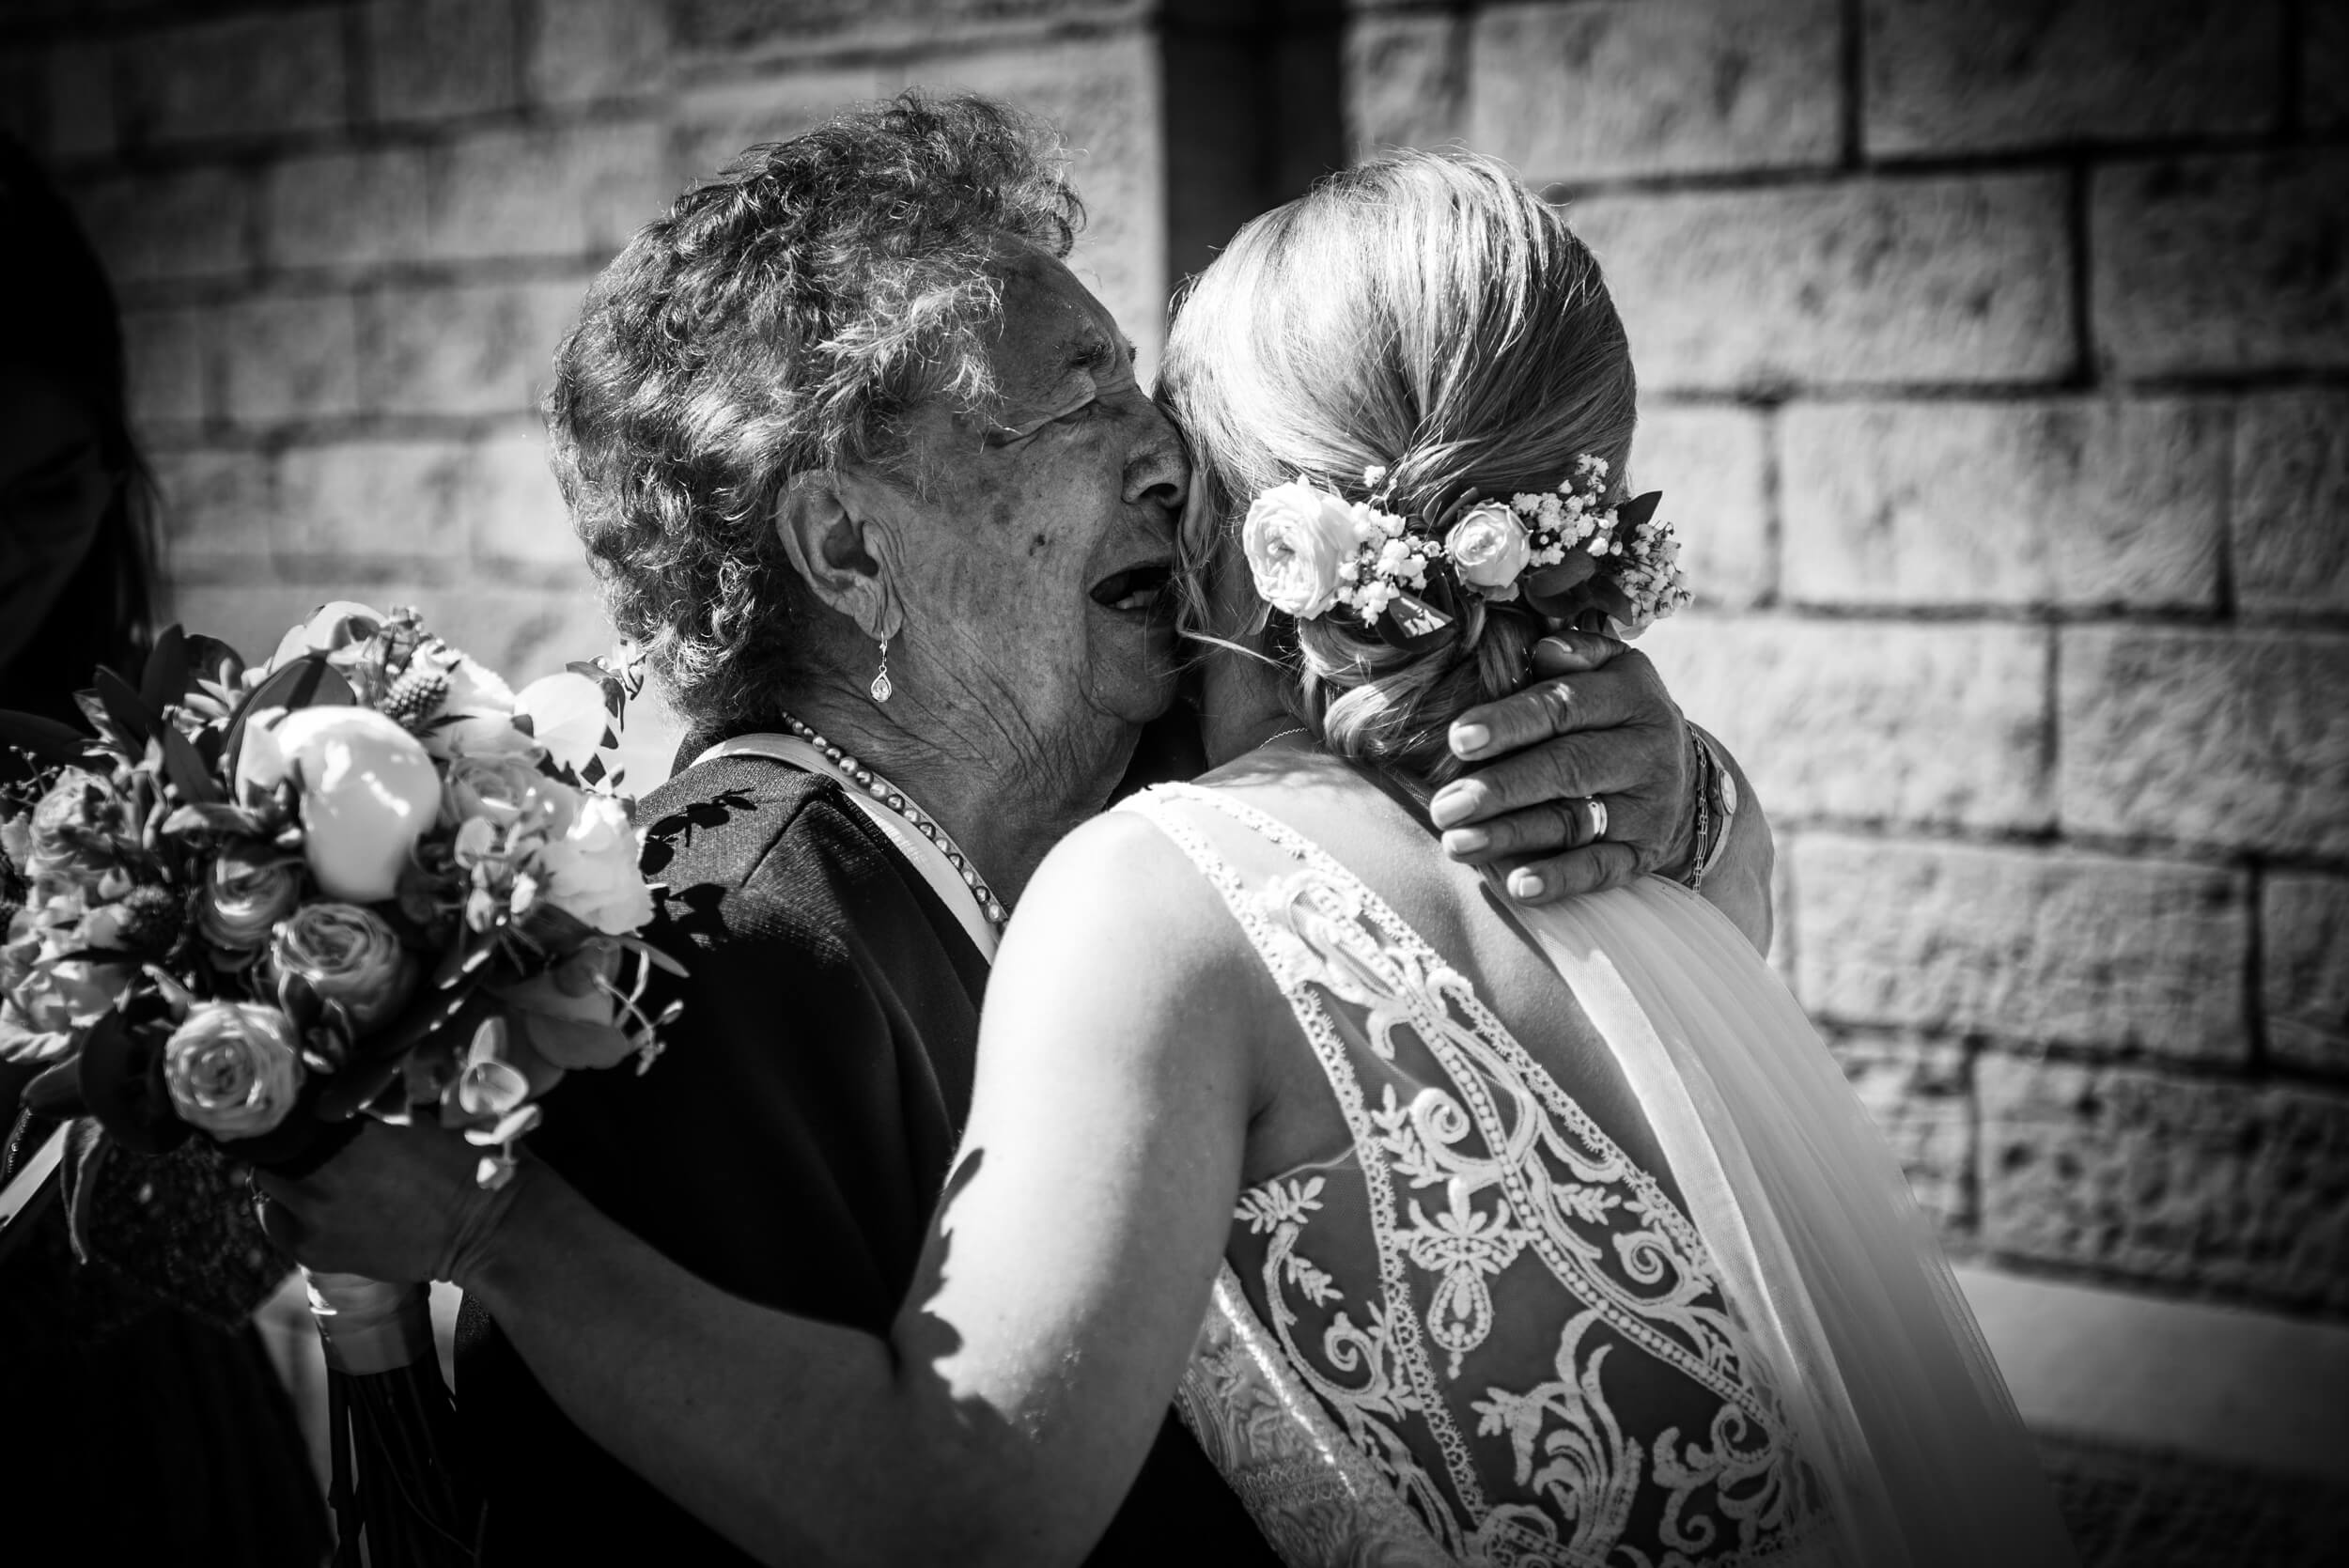 Oma umarmt die Braut